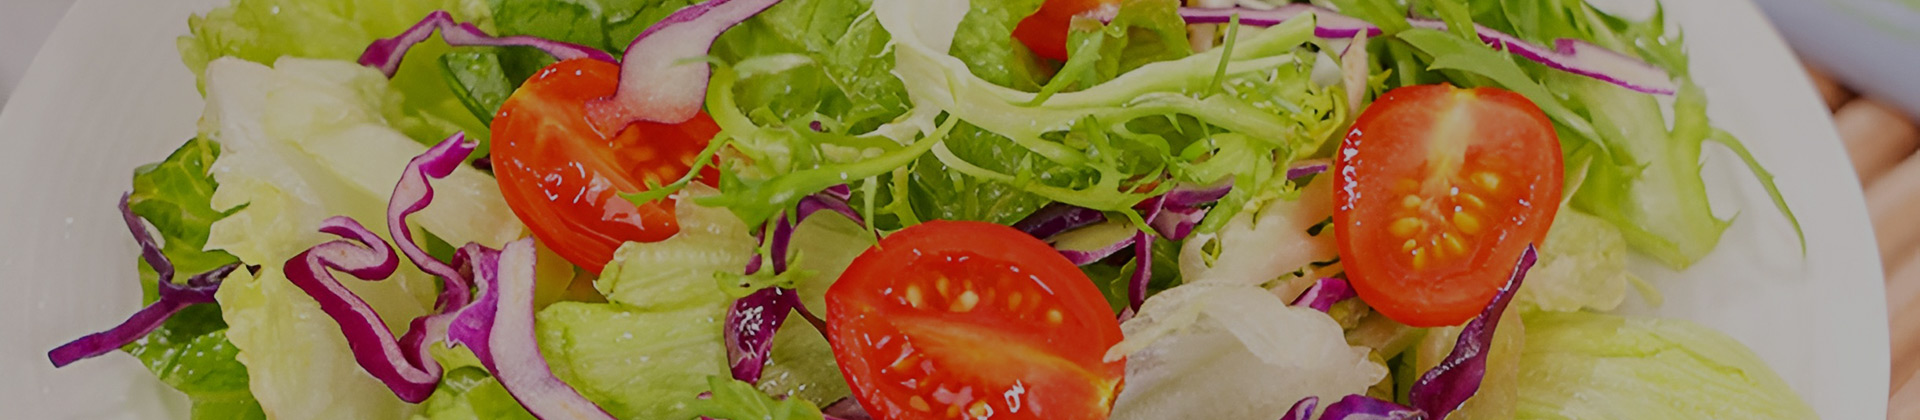 Vegetable Salad Processing Line Solution